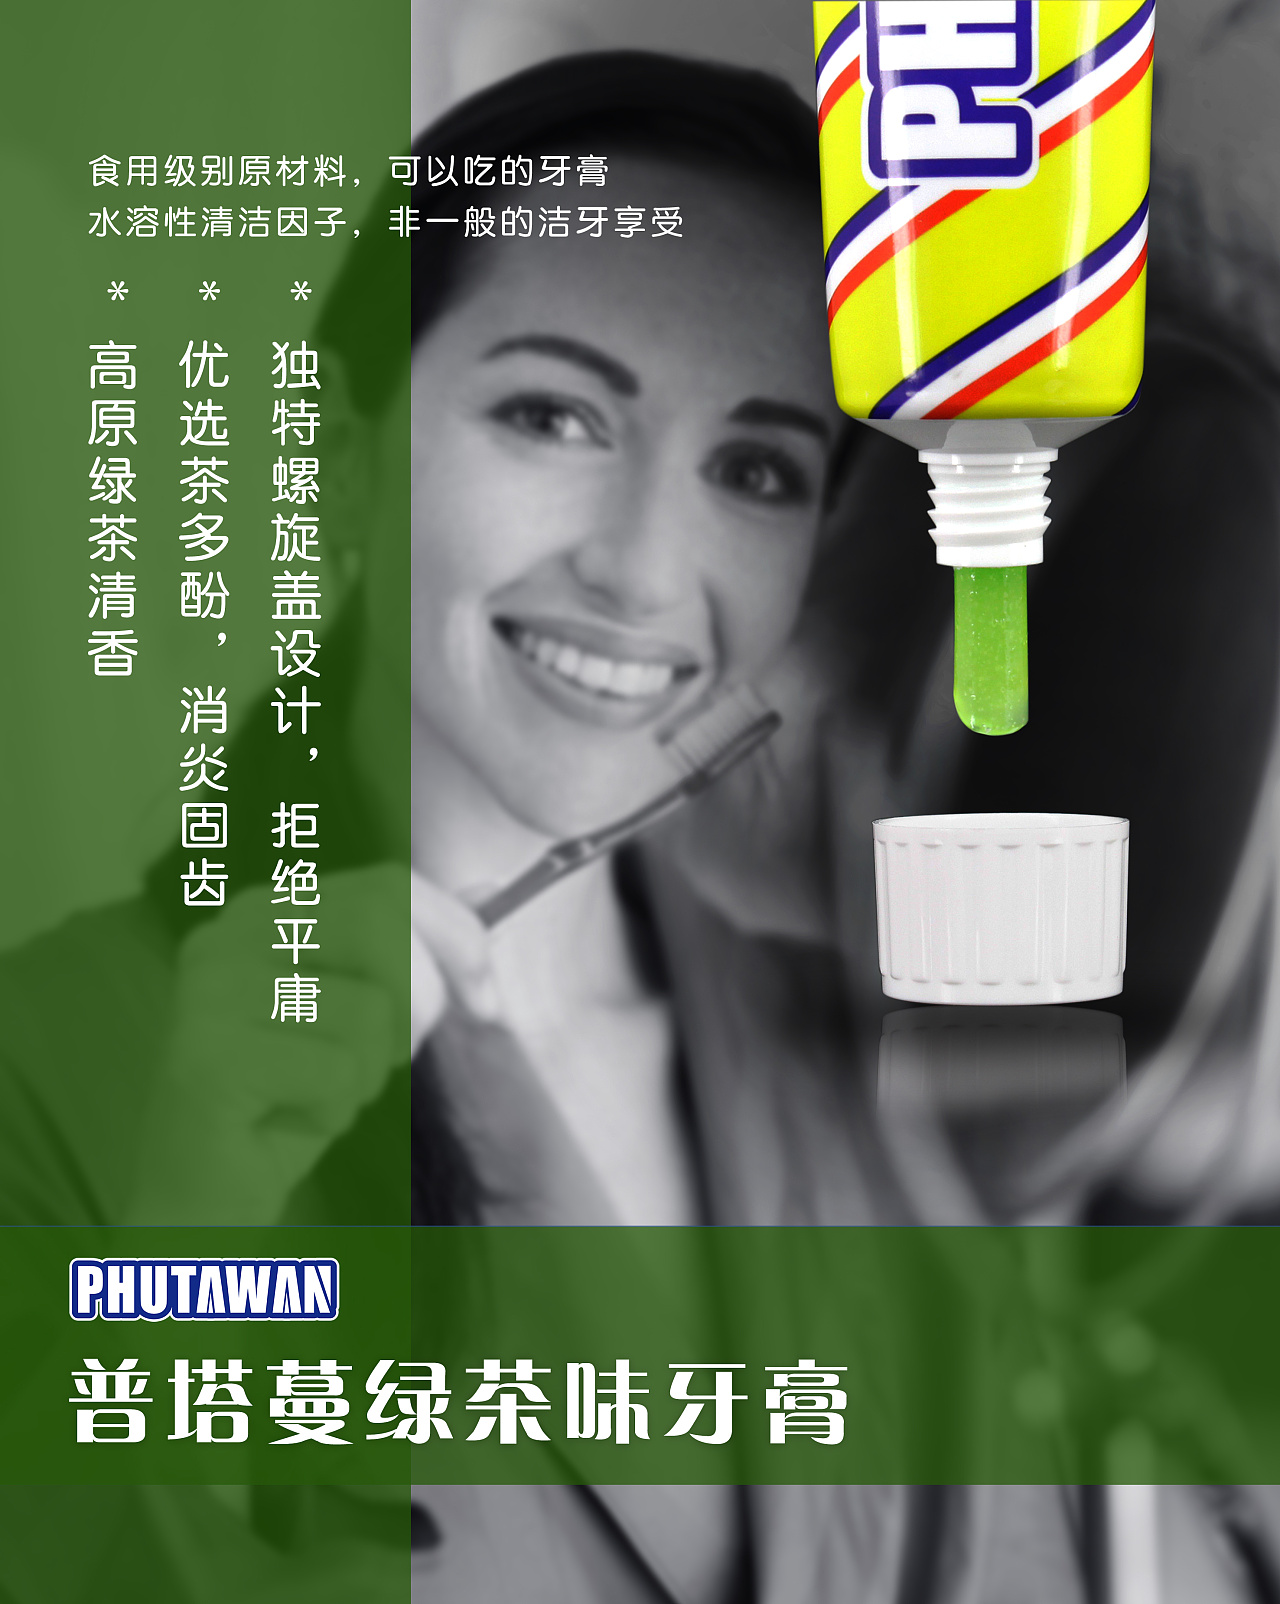 牙膏广告语图片